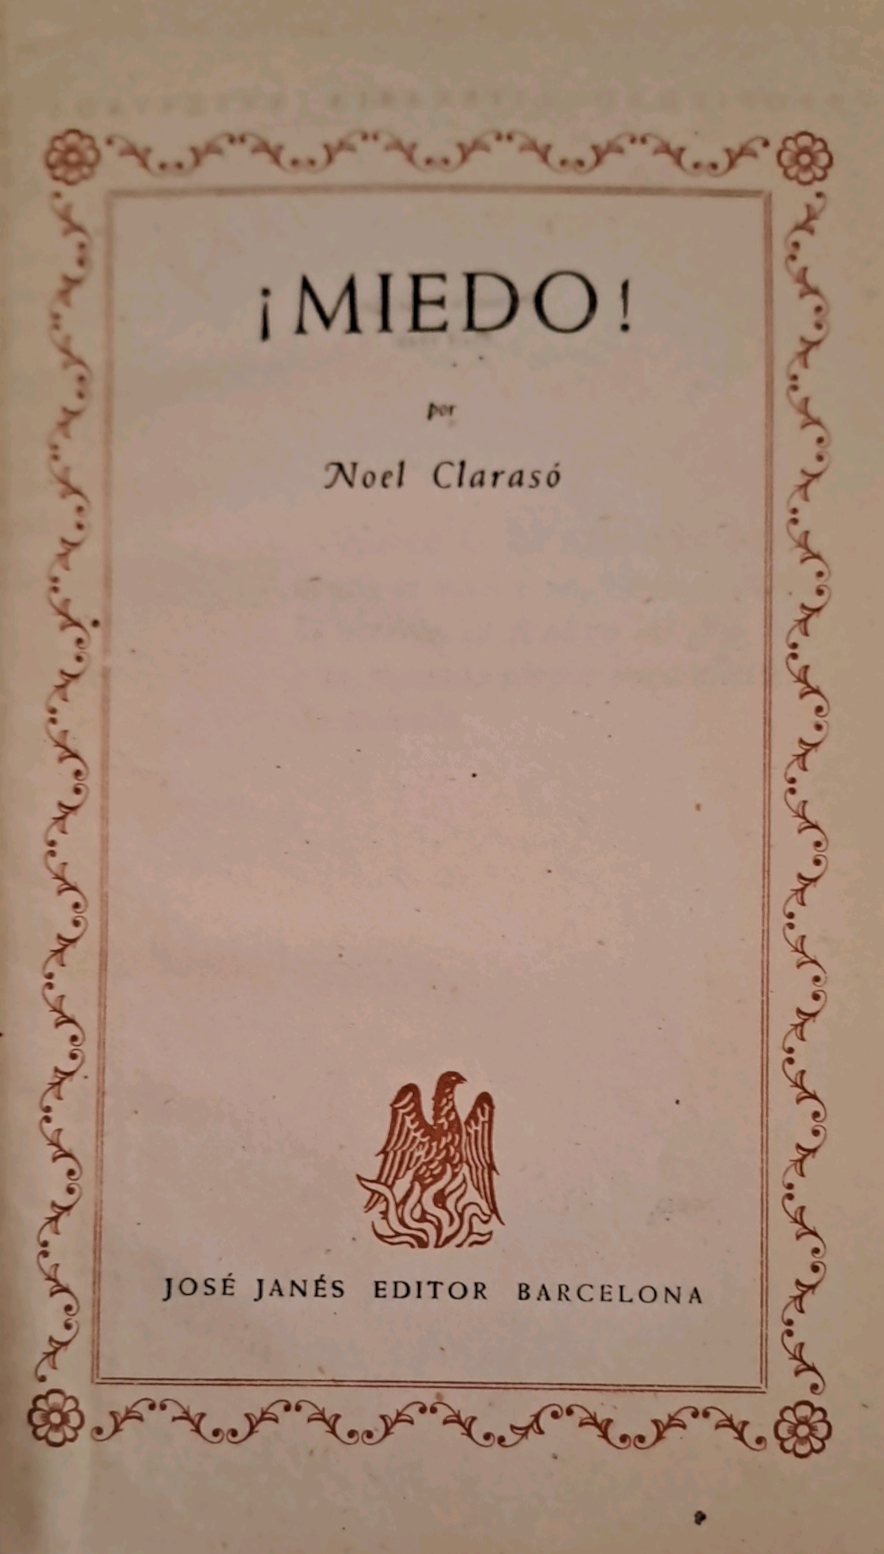 Noel Clarasó: ¡Miedo! (Hardcover, español language, 1948, José Janés Editor)